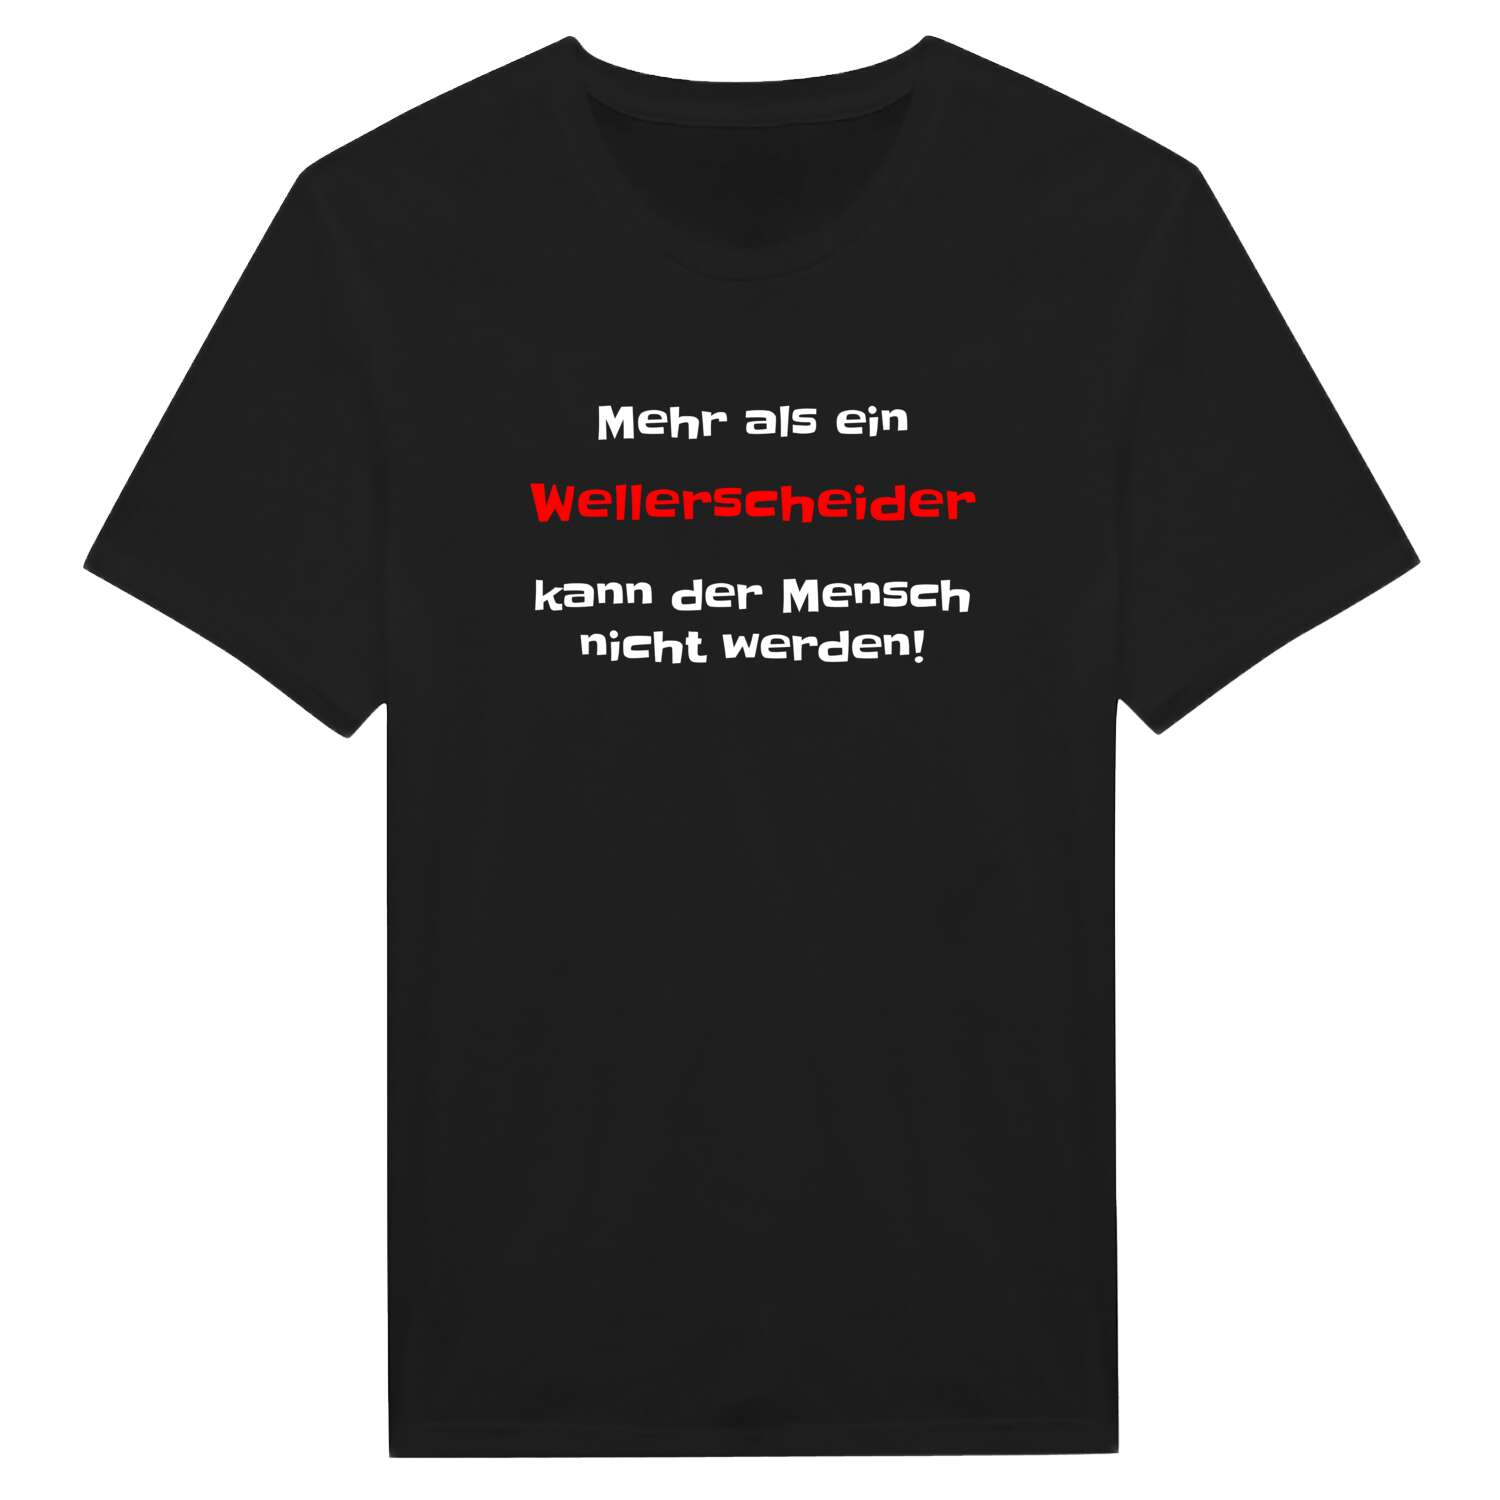 Wellerscheid T-Shirt »Mehr als ein«